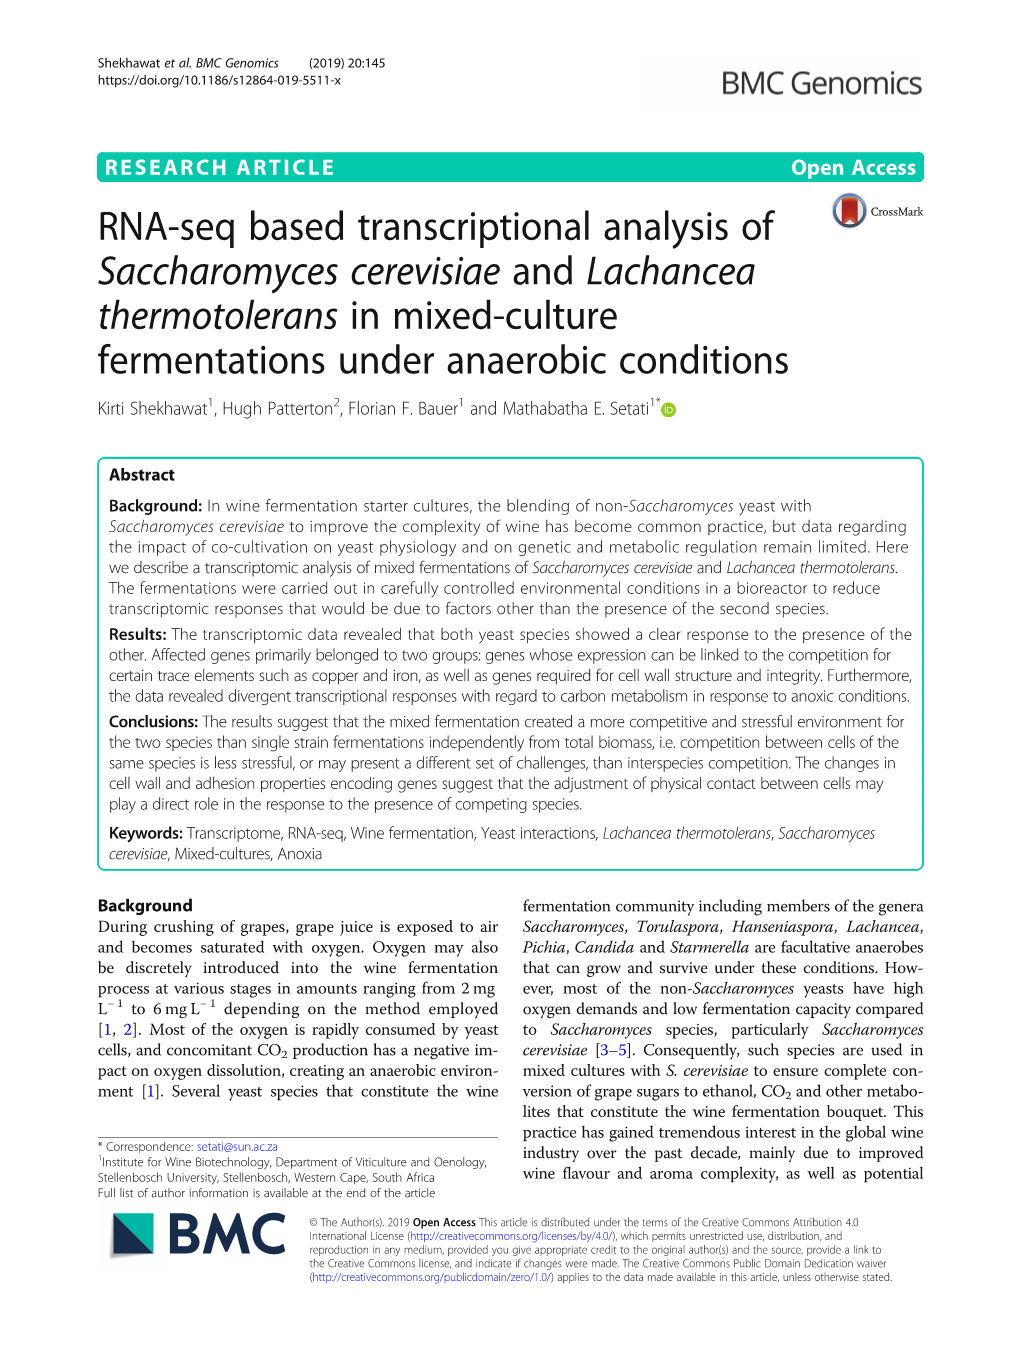 RNA-Seq Based Transcriptional Analysis of Saccharomyces